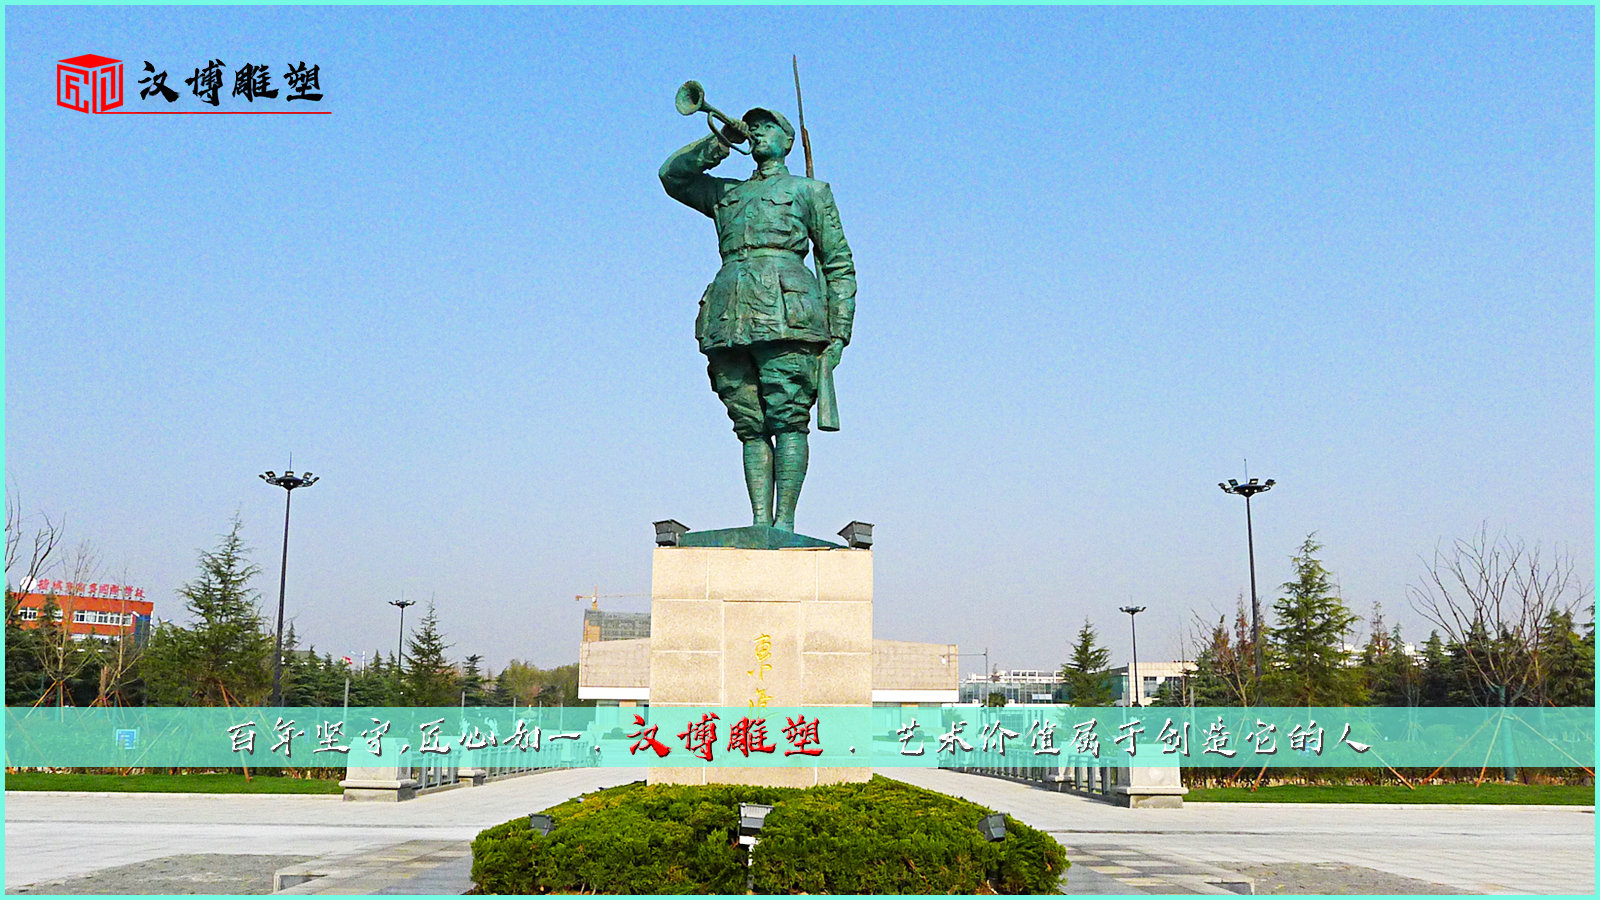 纪念碑雕像,军人主题塑像,人物铸铜雕塑